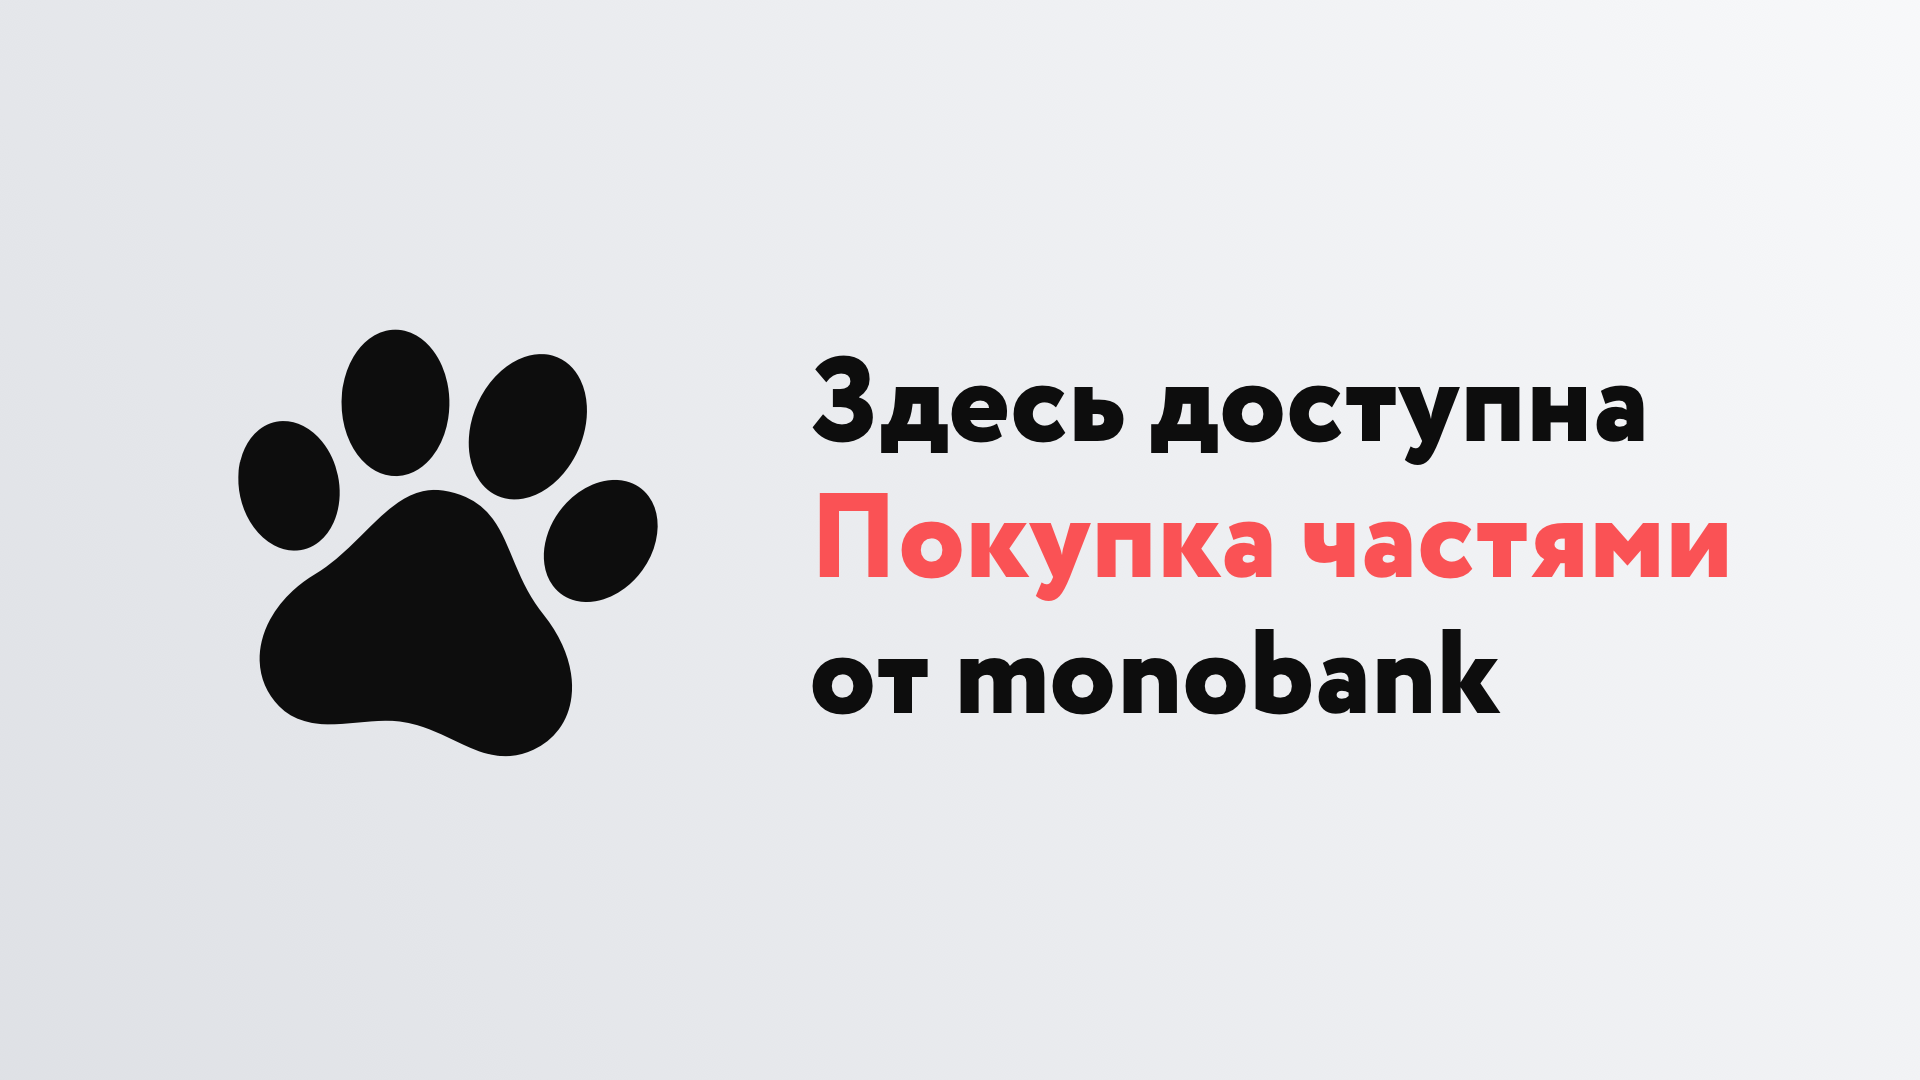 покупка частями от monobank